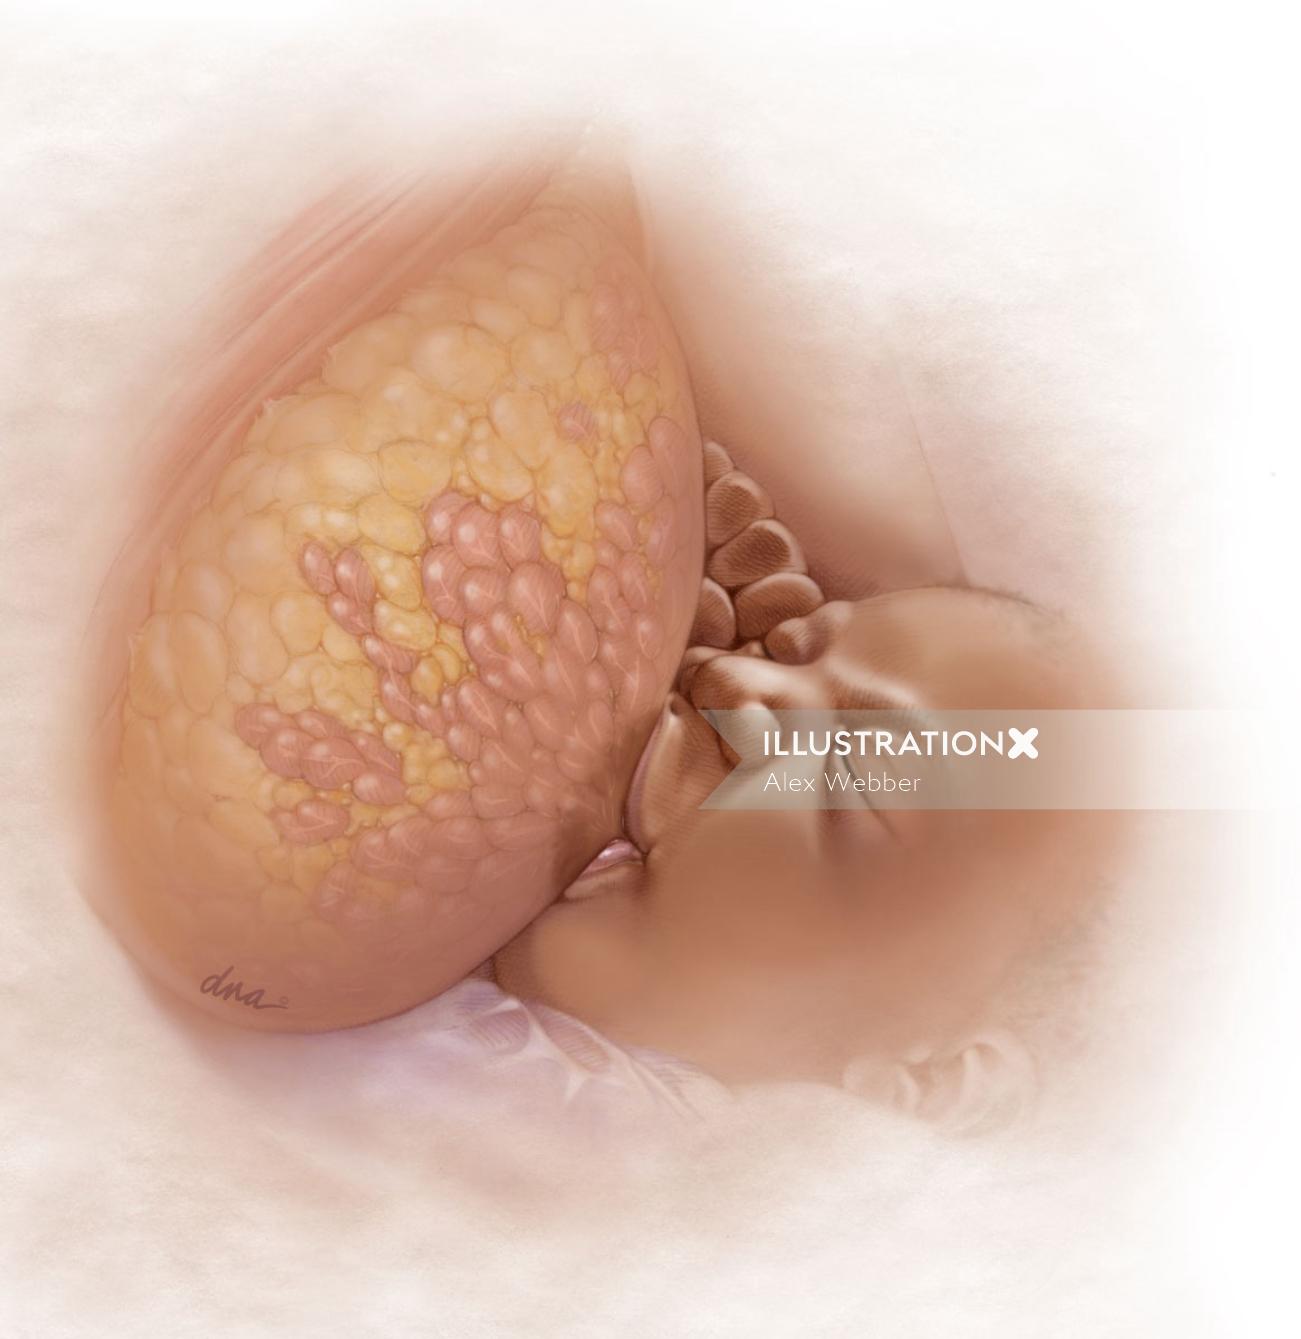 Anatomia de uma mama em lactação para Revista Médica